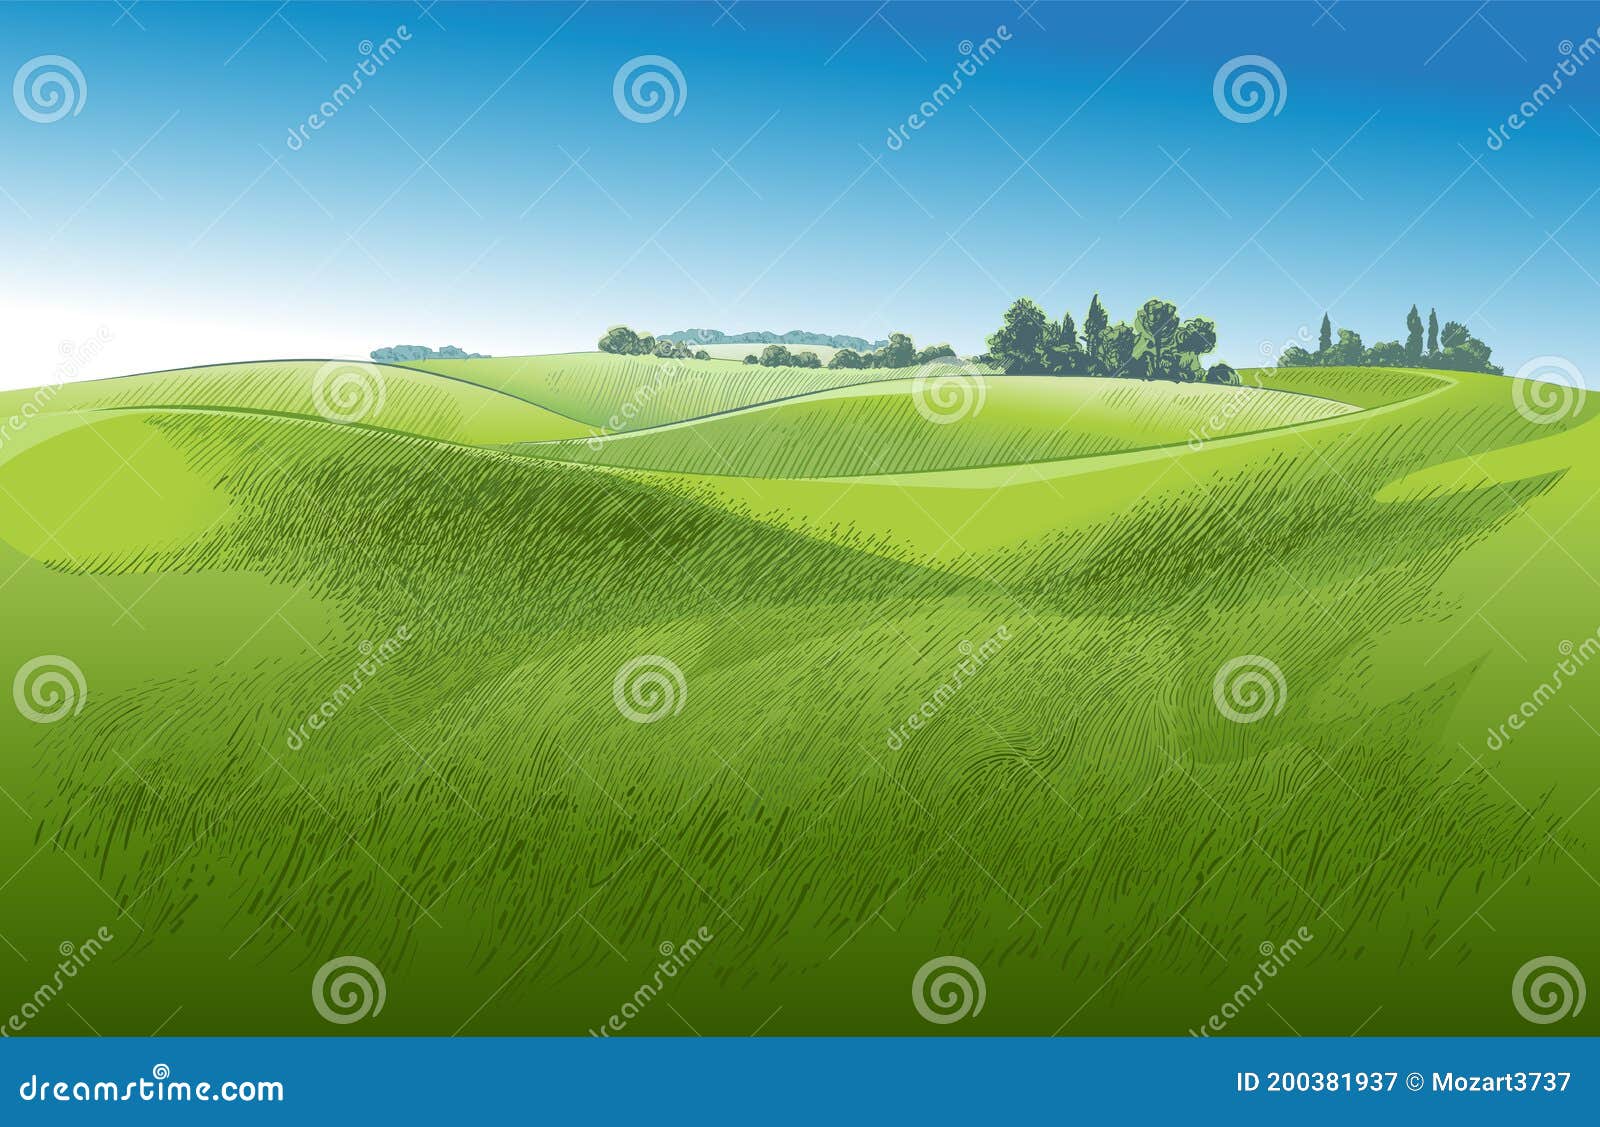  green grass field on small hills. meadow, alkali, lye, grassland, pommel, lea, pasturage, farm. rural scenery